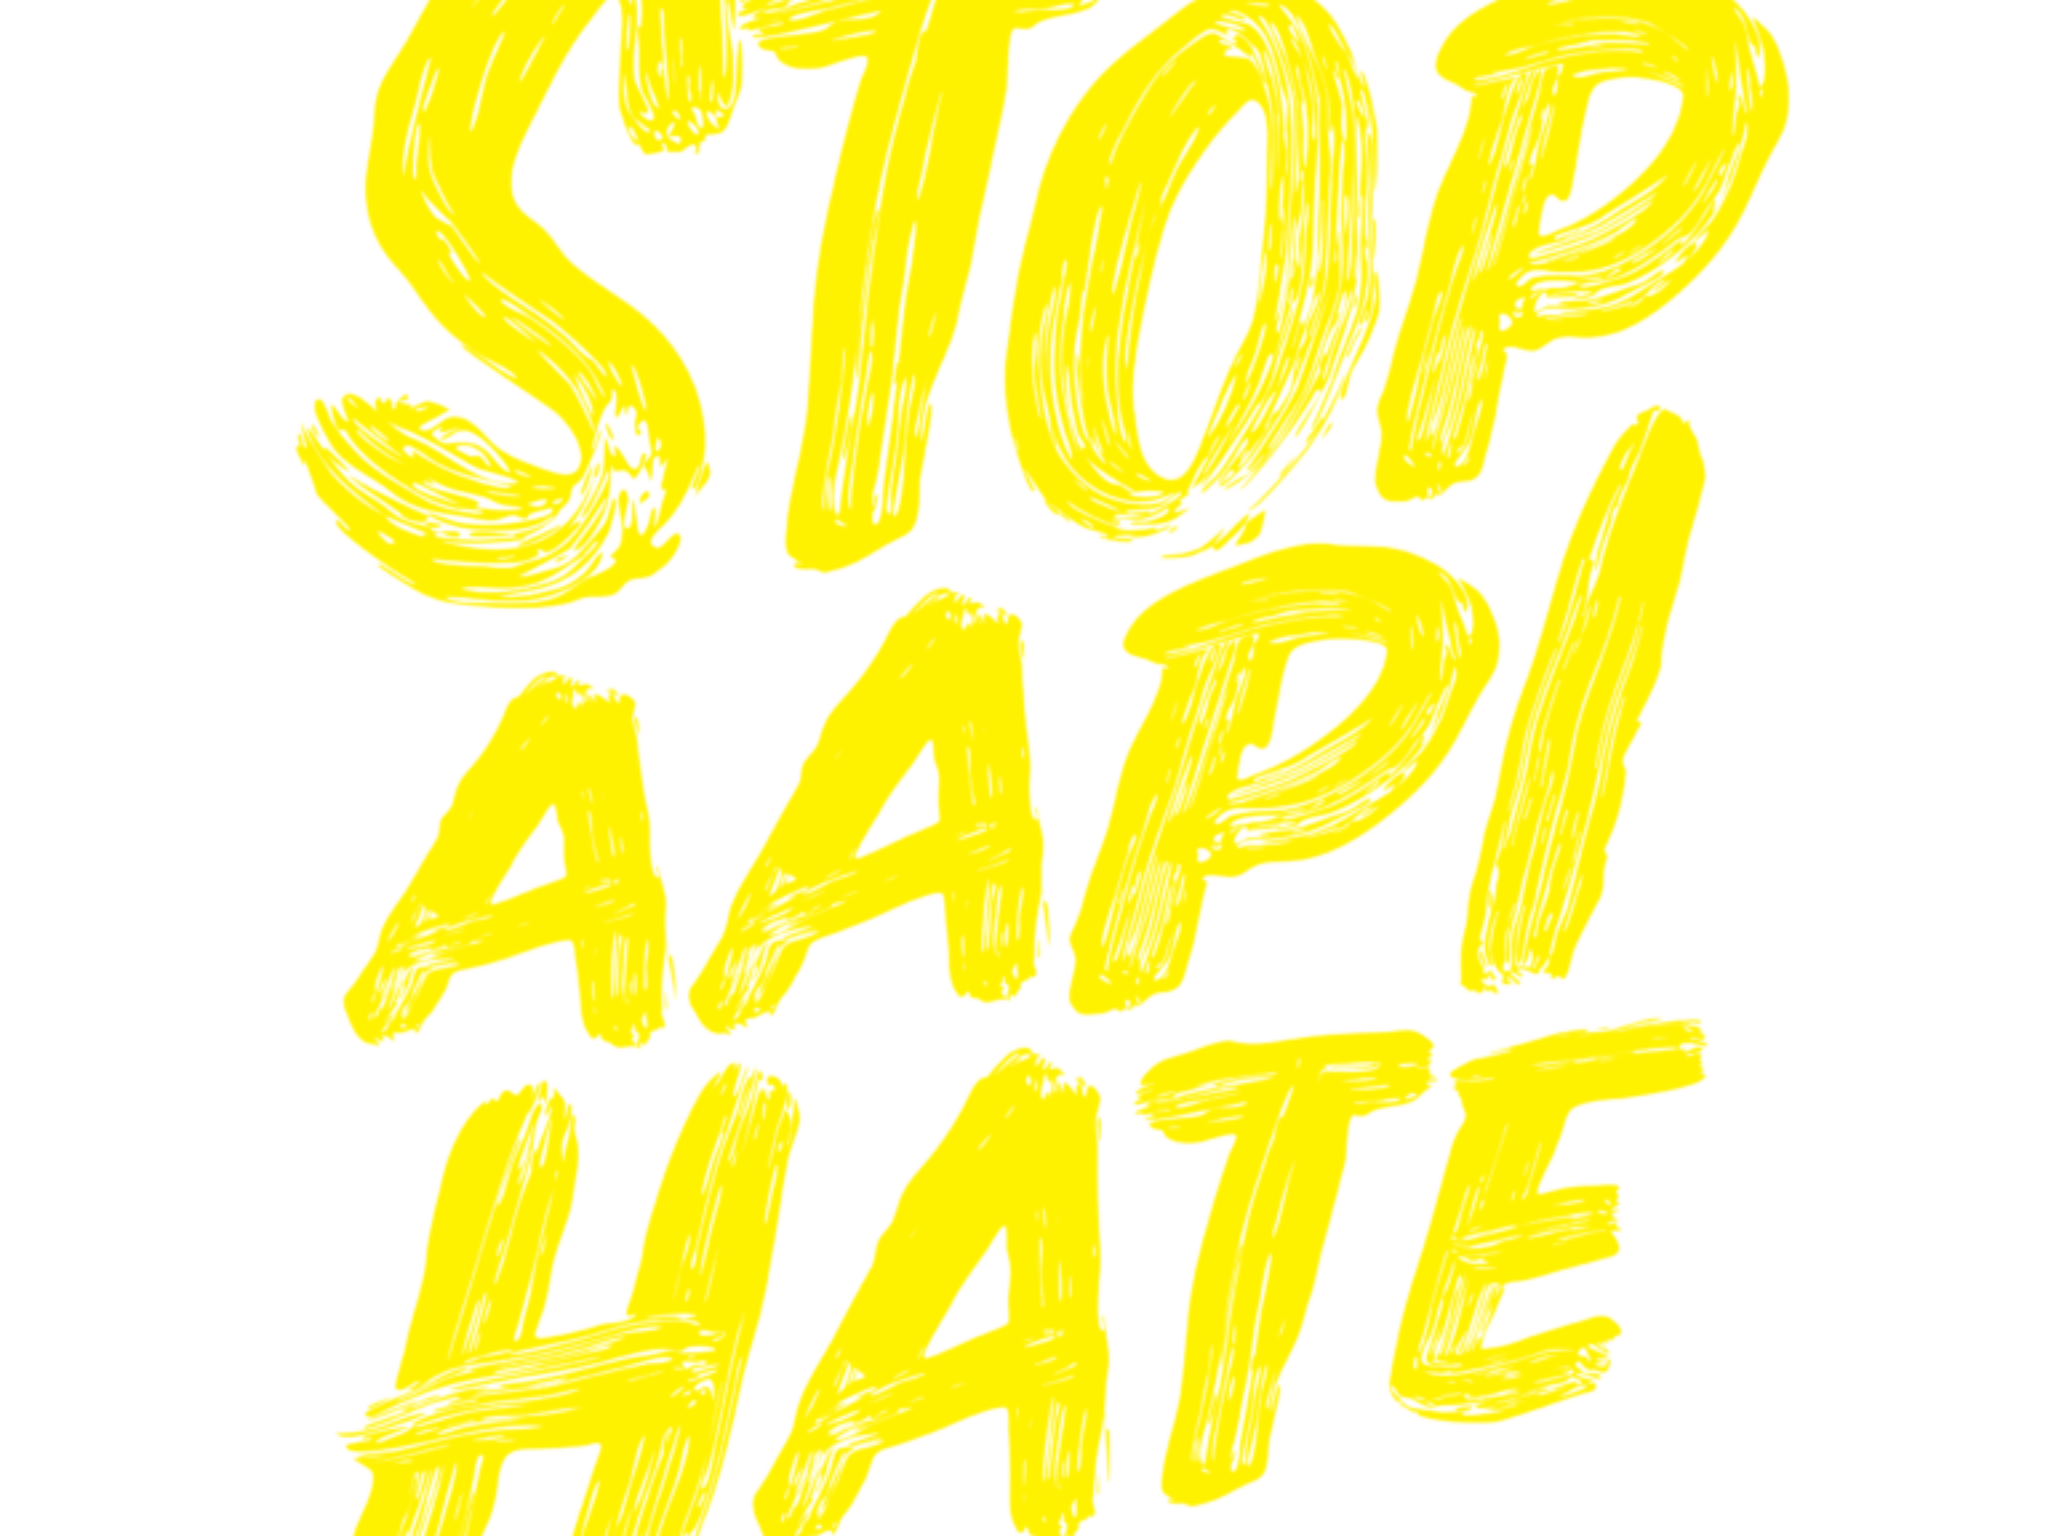 stopaapihate-logo-768x872